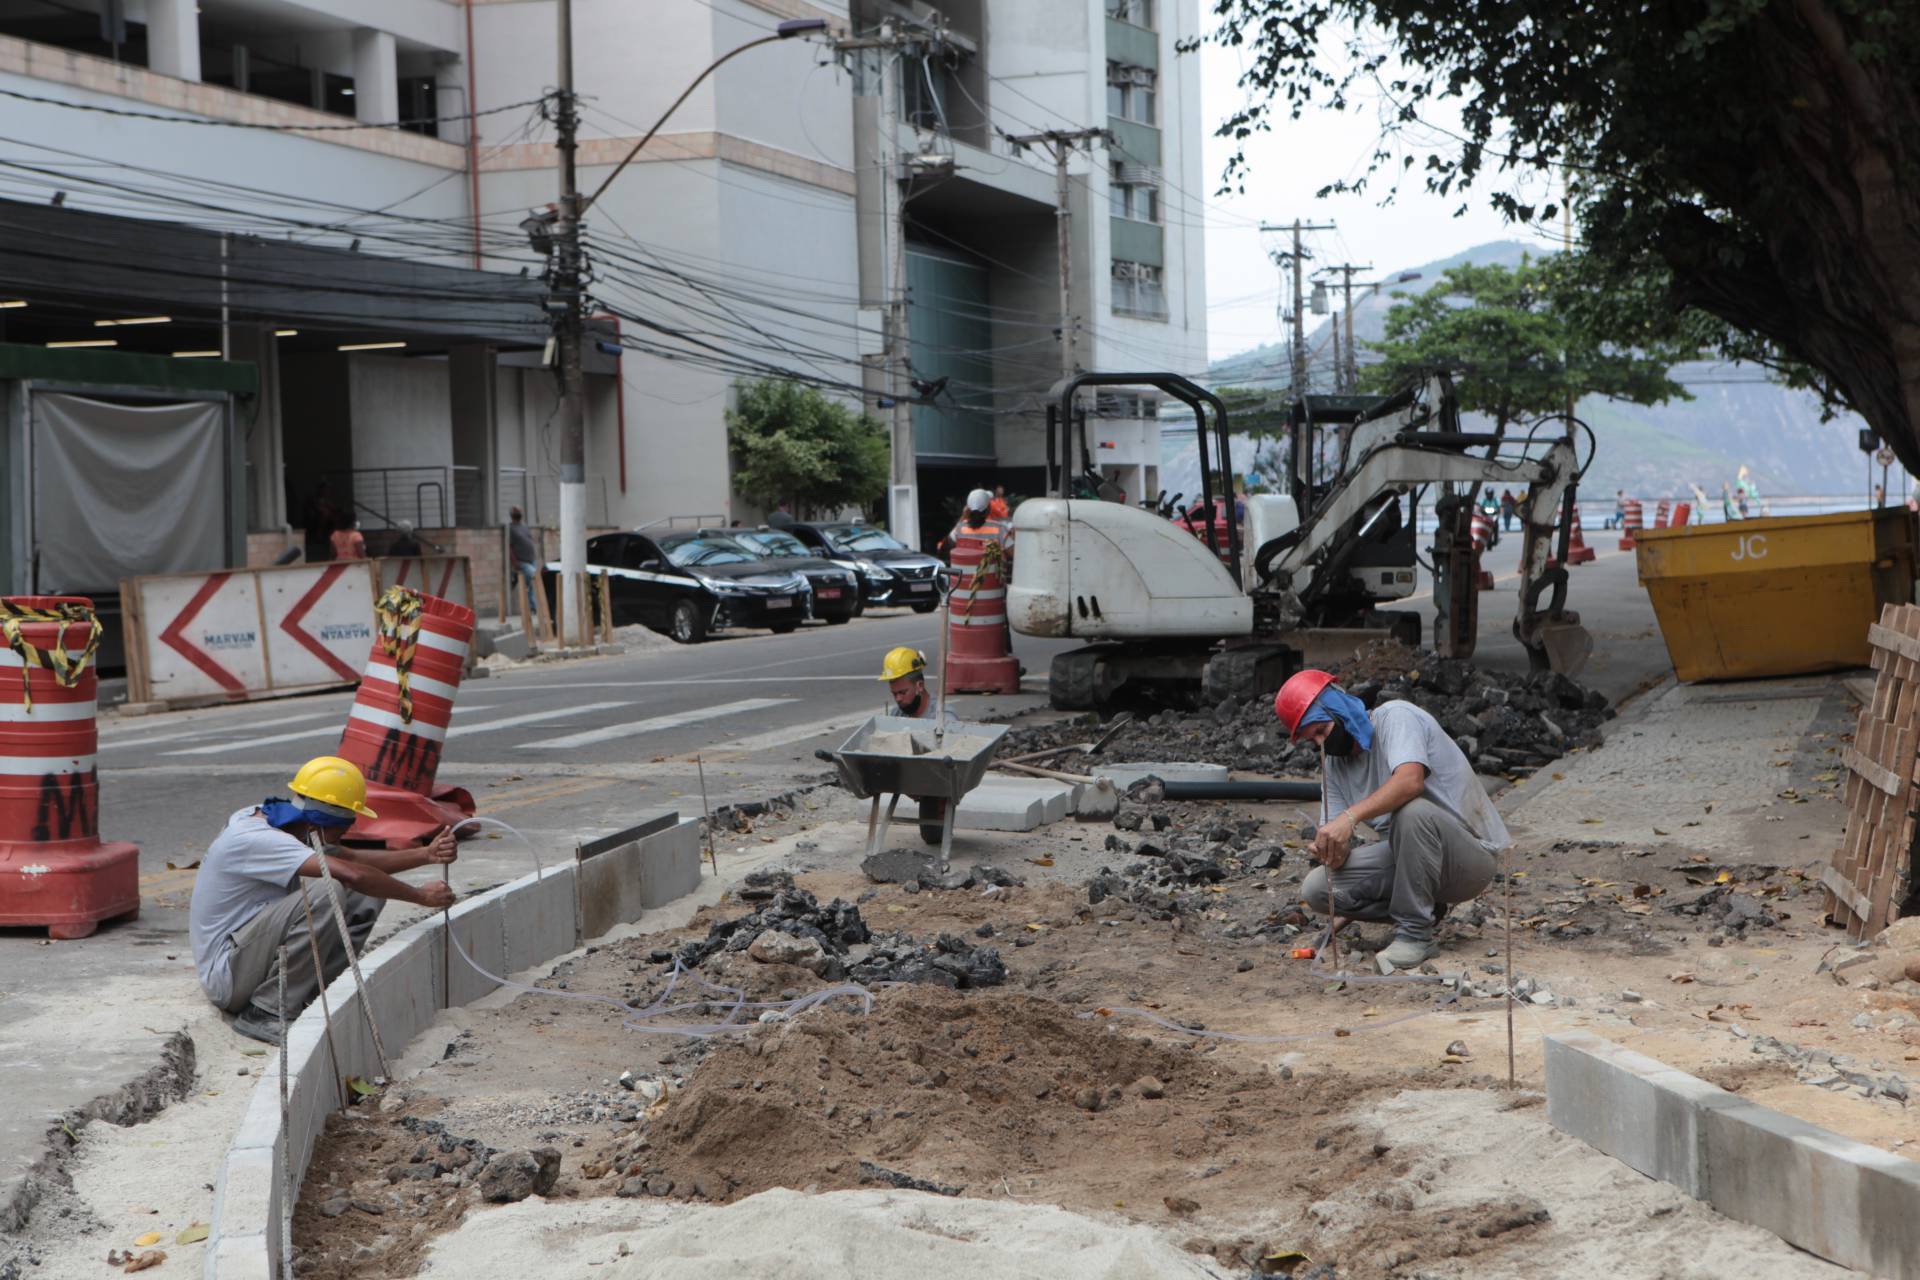  Também foram construídas rampas na esquina das ruas Tiradentes e Fagundes Varela, além da colocação de nova sinalização semafórica - Foto Berg Silva